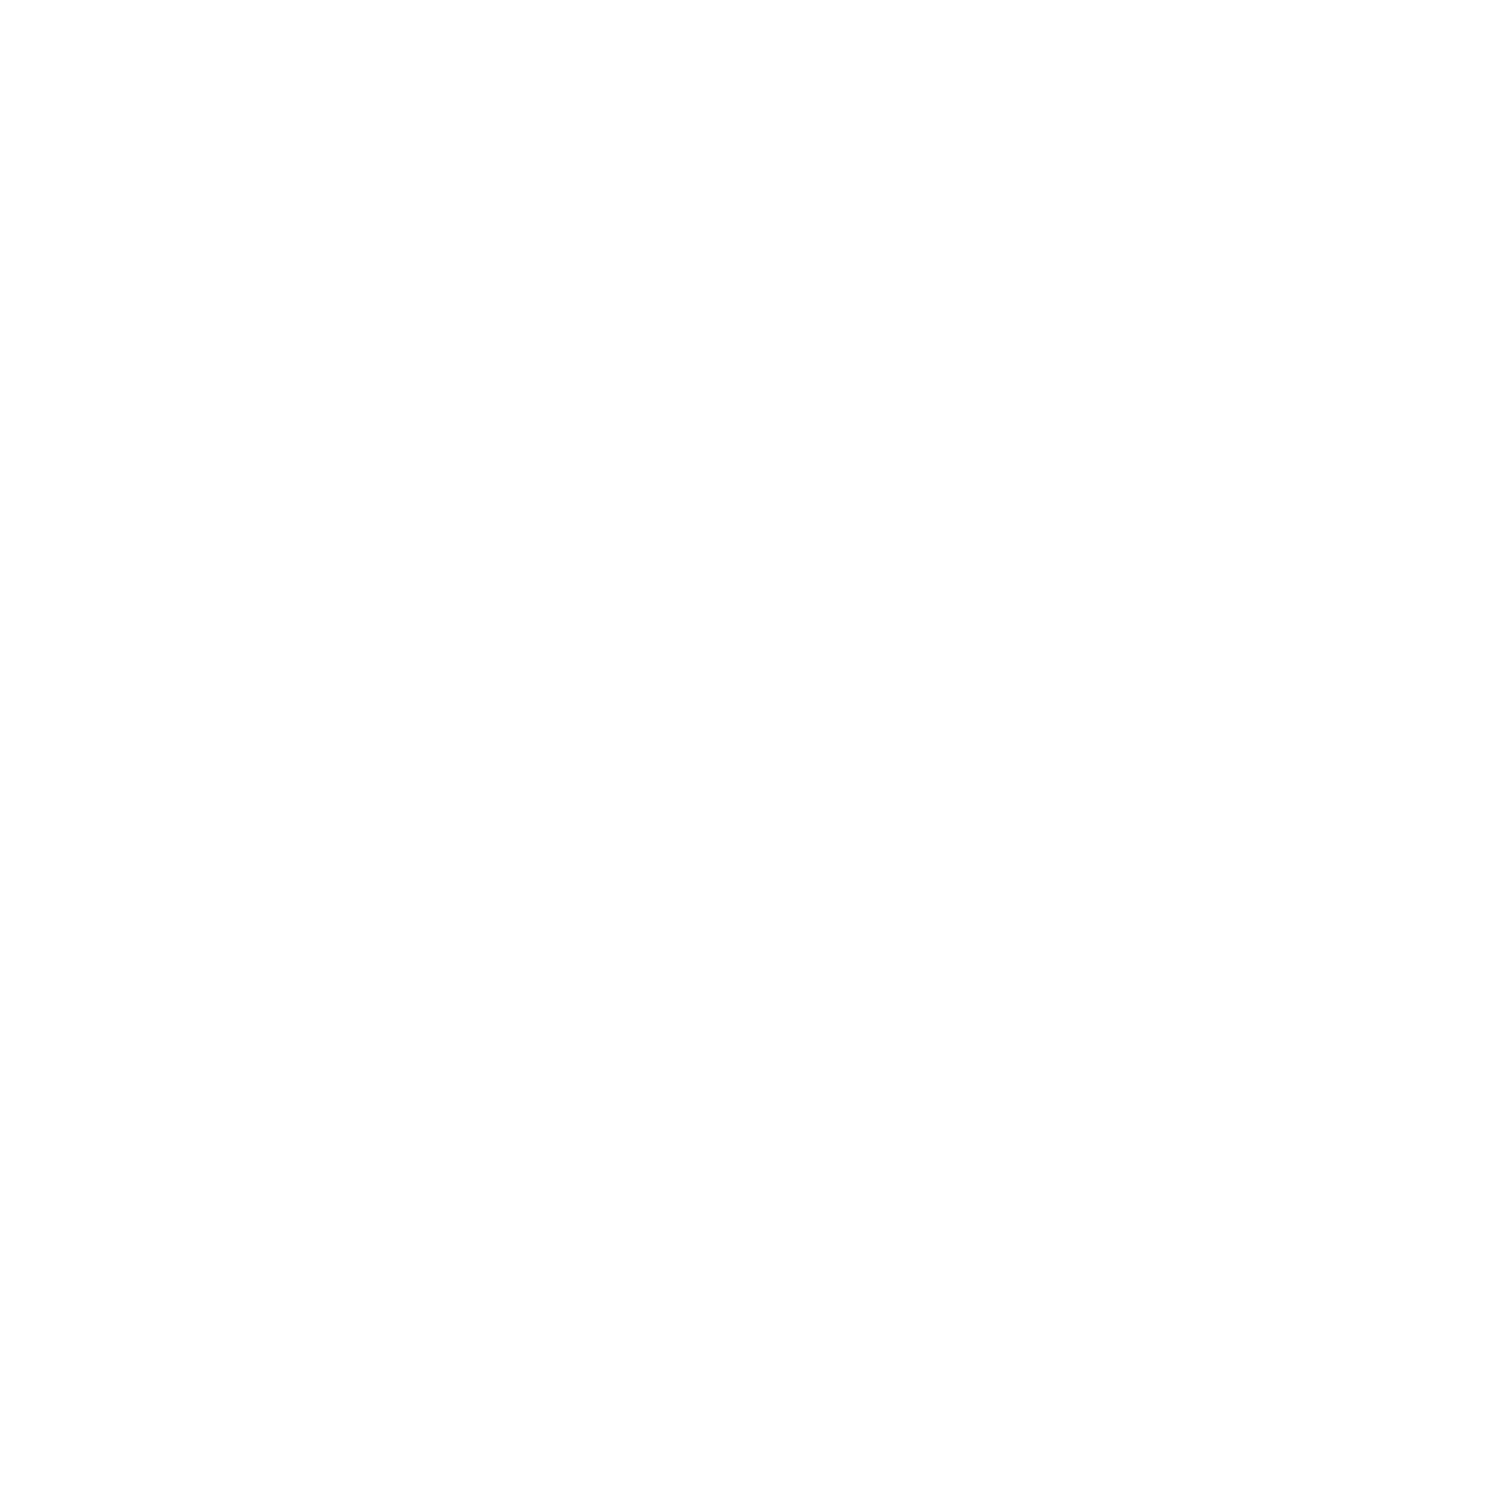 philipsbarbequeco.com